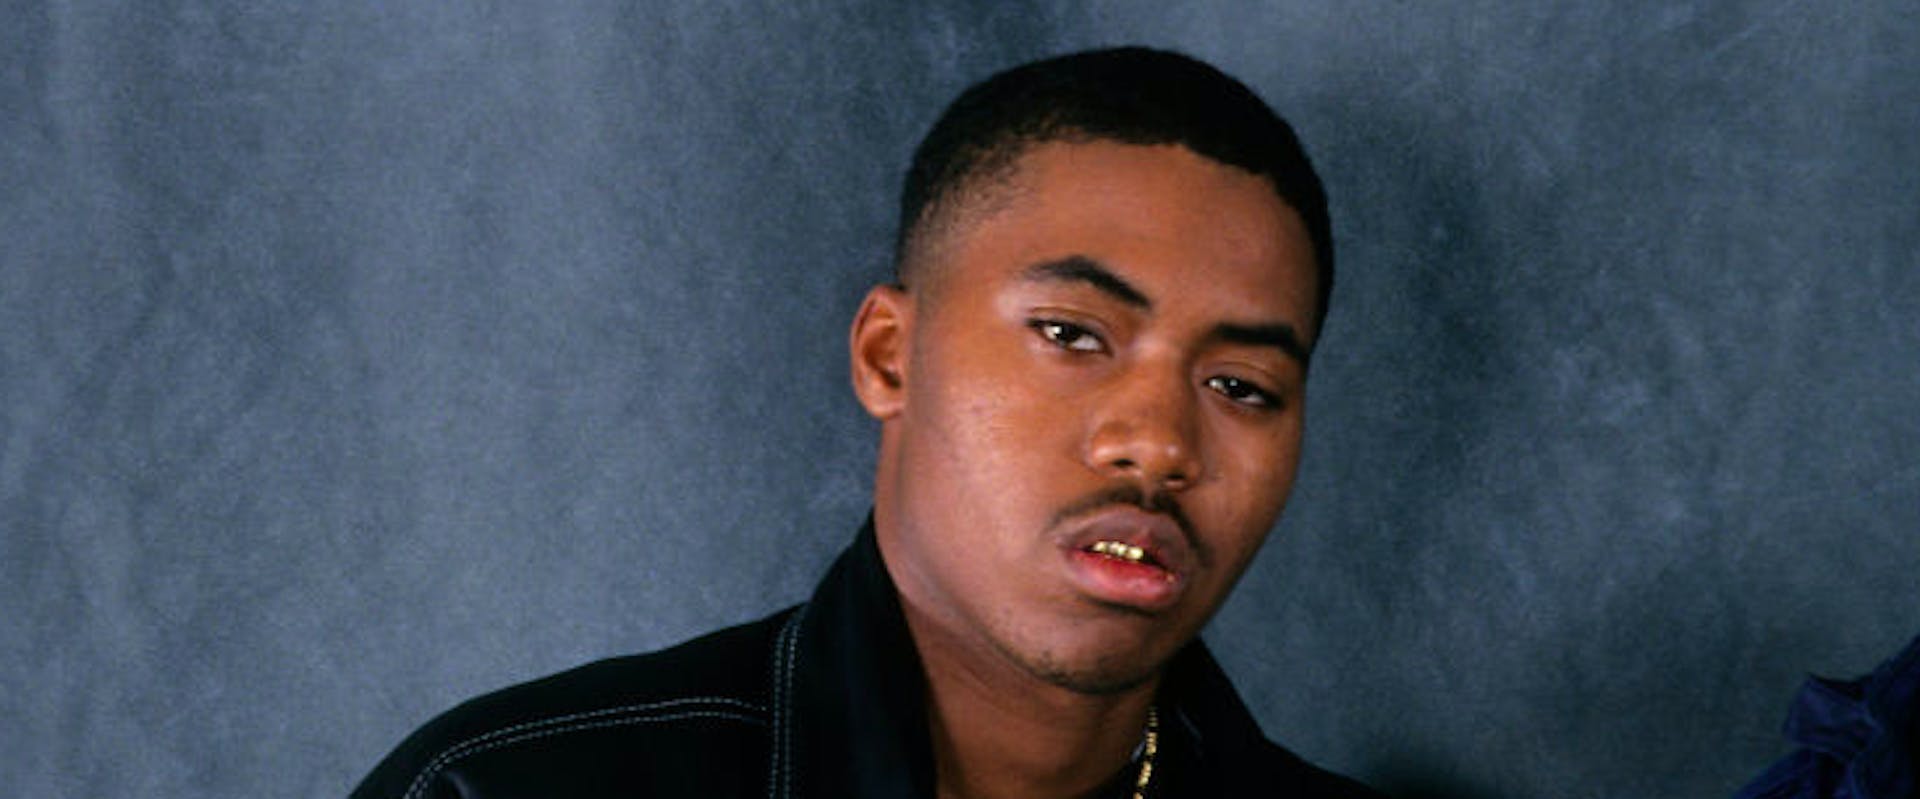 NEW YORK NEW YORK--NOVEMBER 10: Rapper Nas taken on November 10, 1994 in New York City 